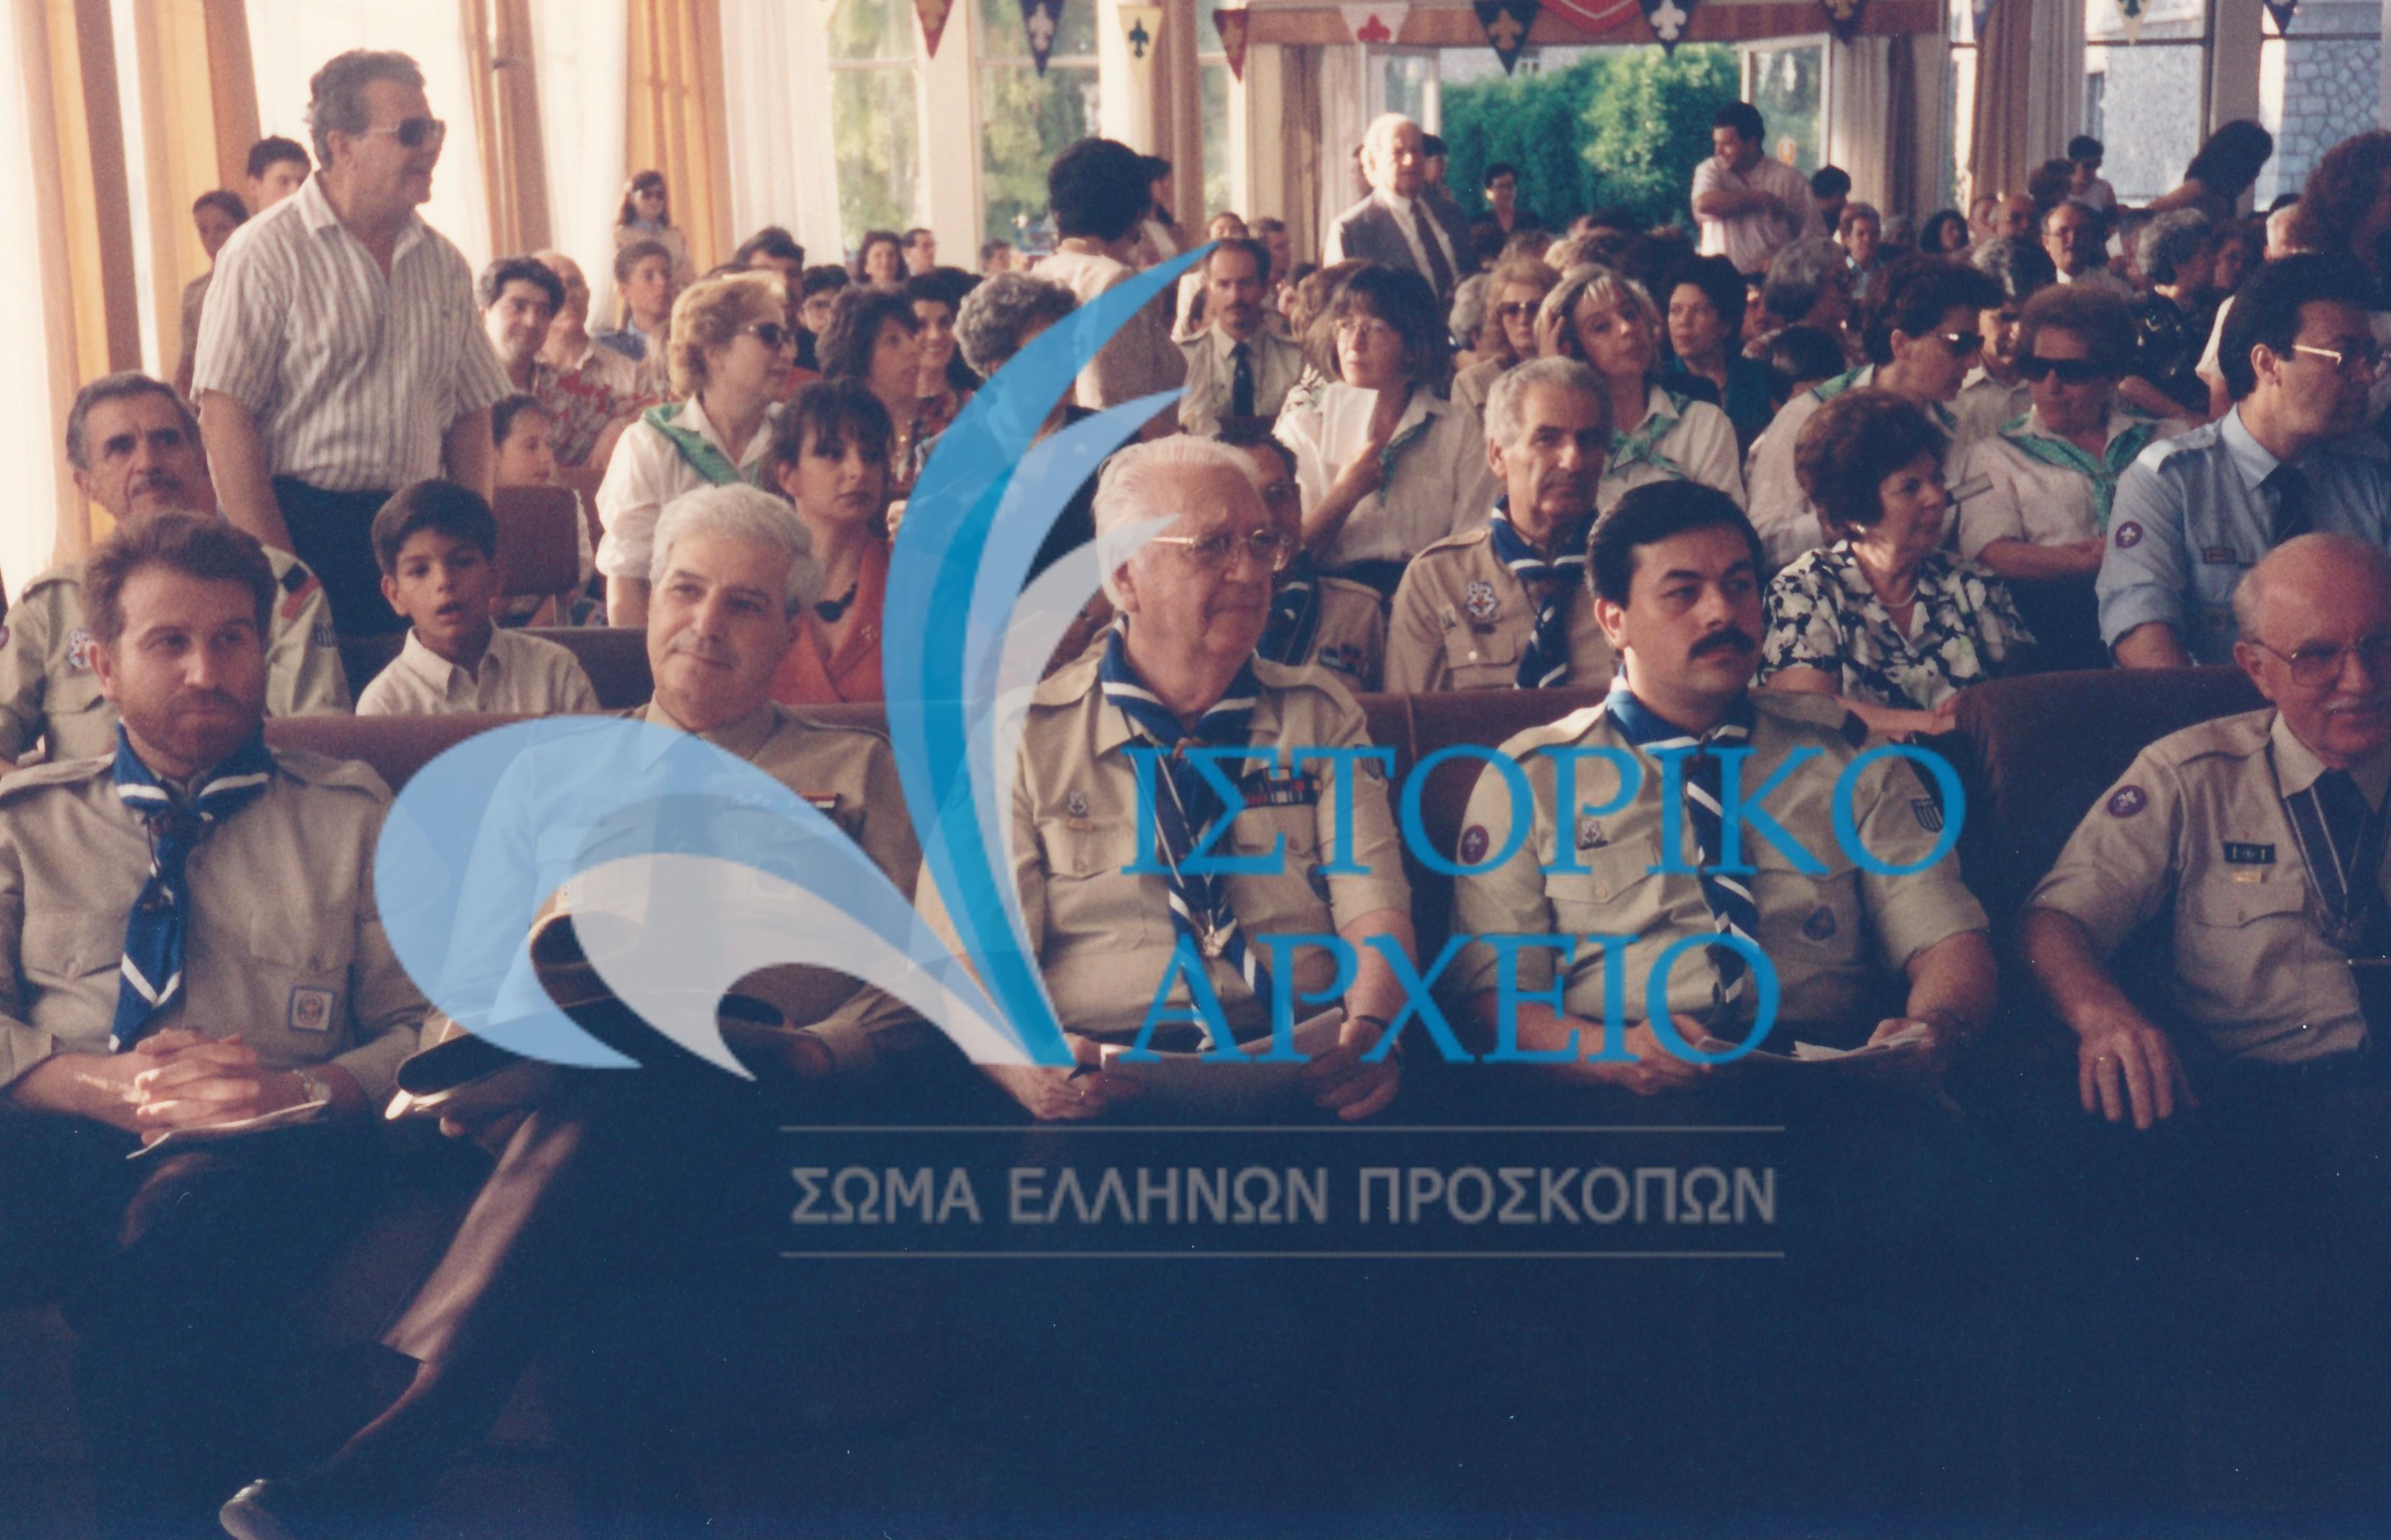 Προσκοπικό συνέδριο, κοινωνική προσφορά, εκδηλώσεις για την ελληνικότητα της Μακεδονίας, και δράσεις σε όλη την χώρα.